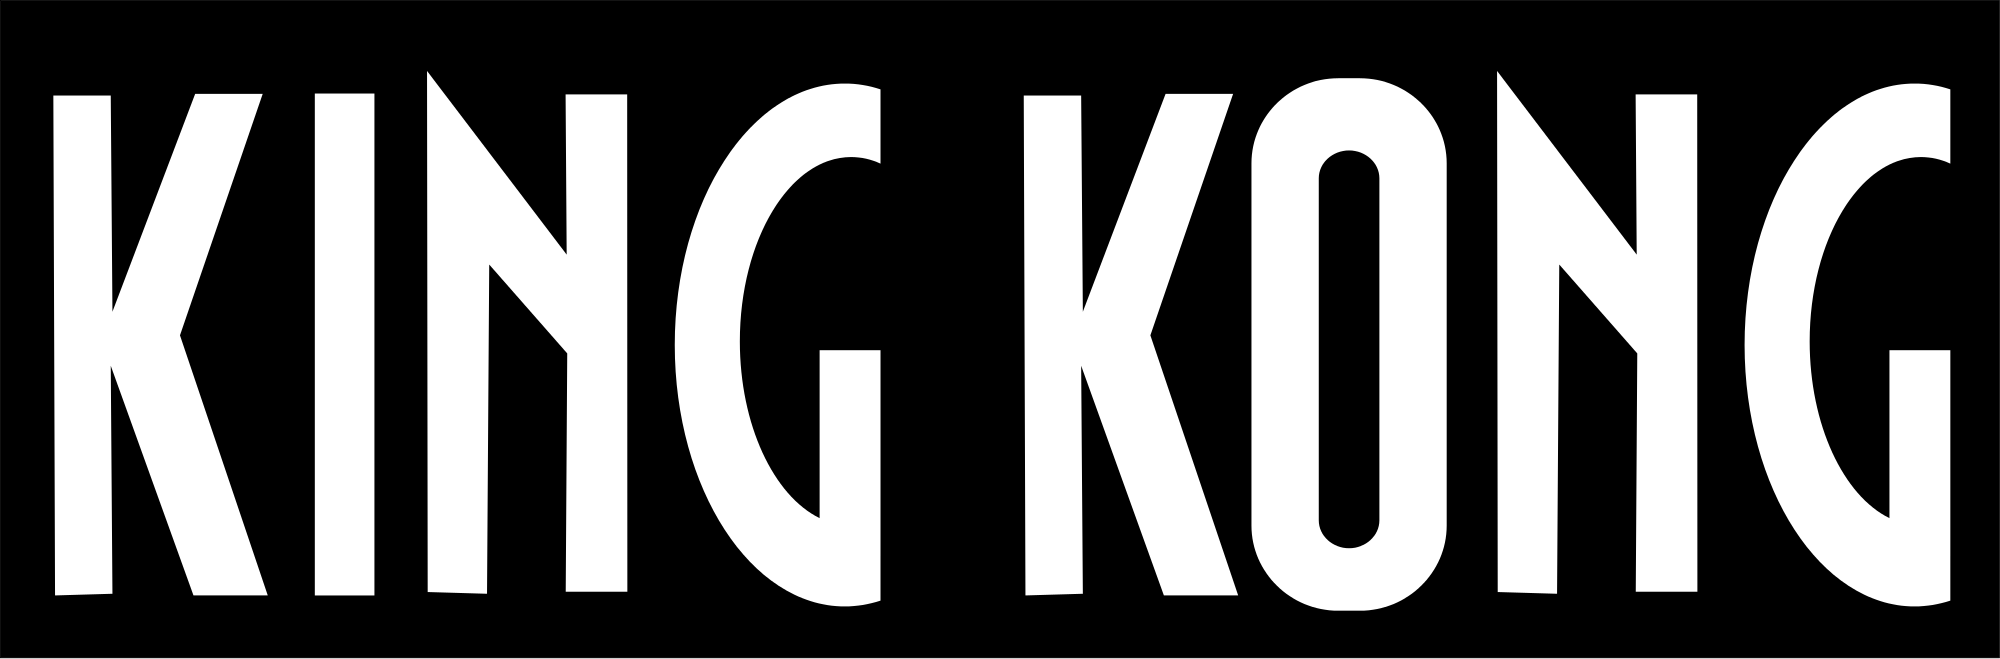 King Kong svg #19, Download drawings